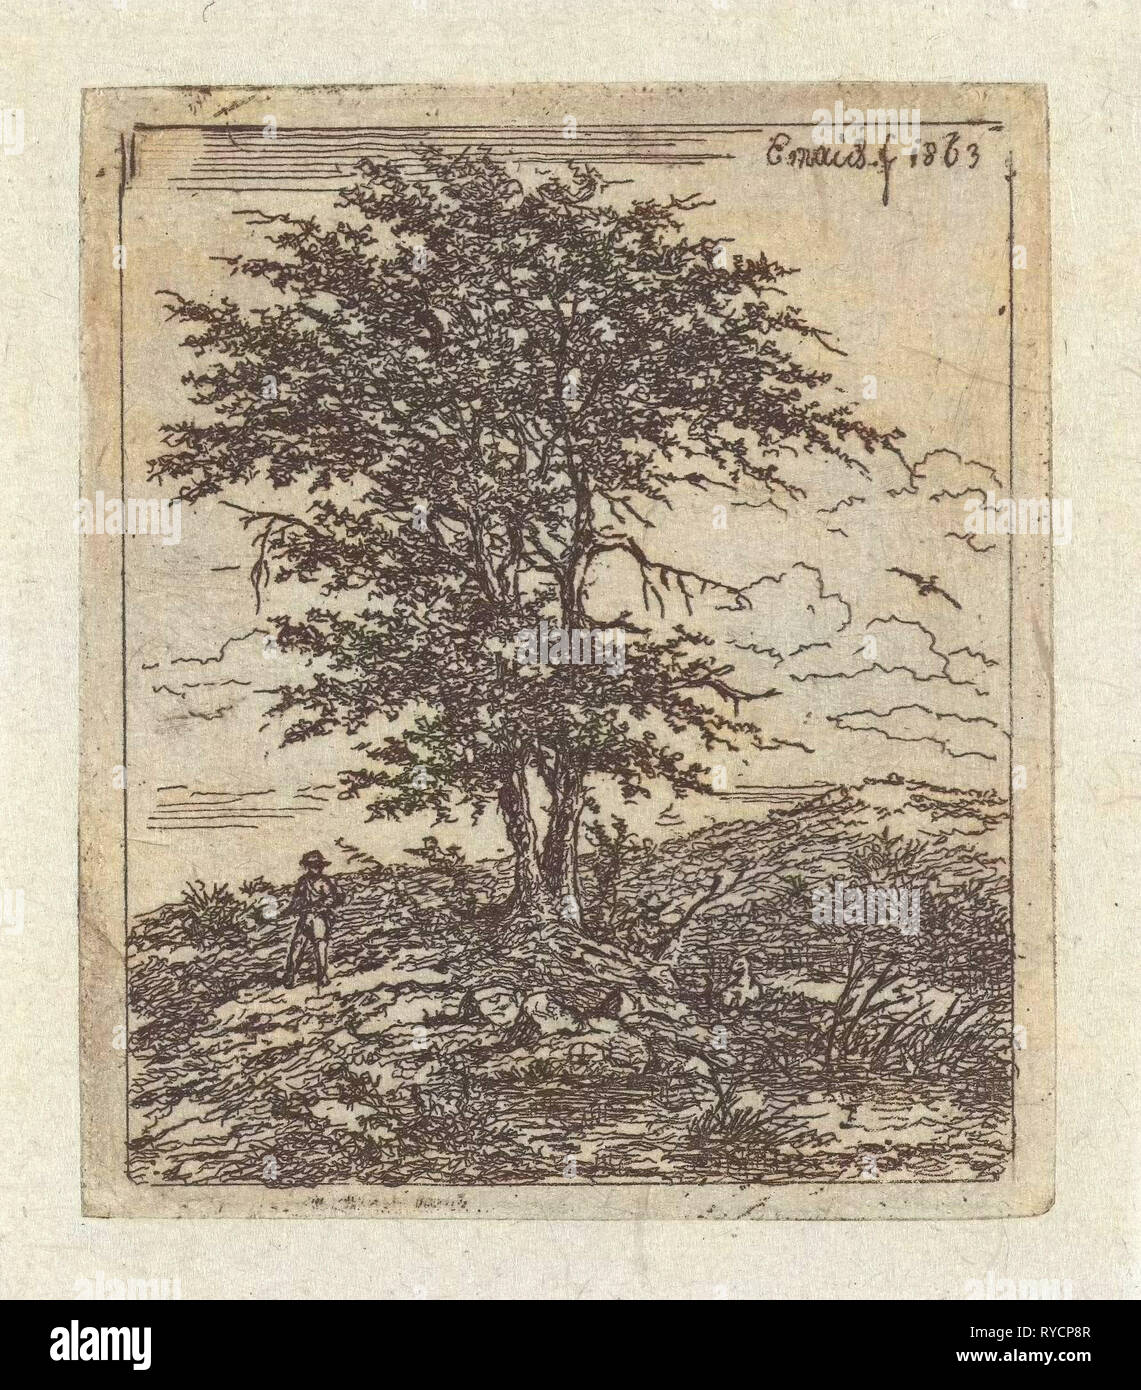 Landscape with oak and hunter, Gerardus Emaus de Micault, 1863 Stock Photo